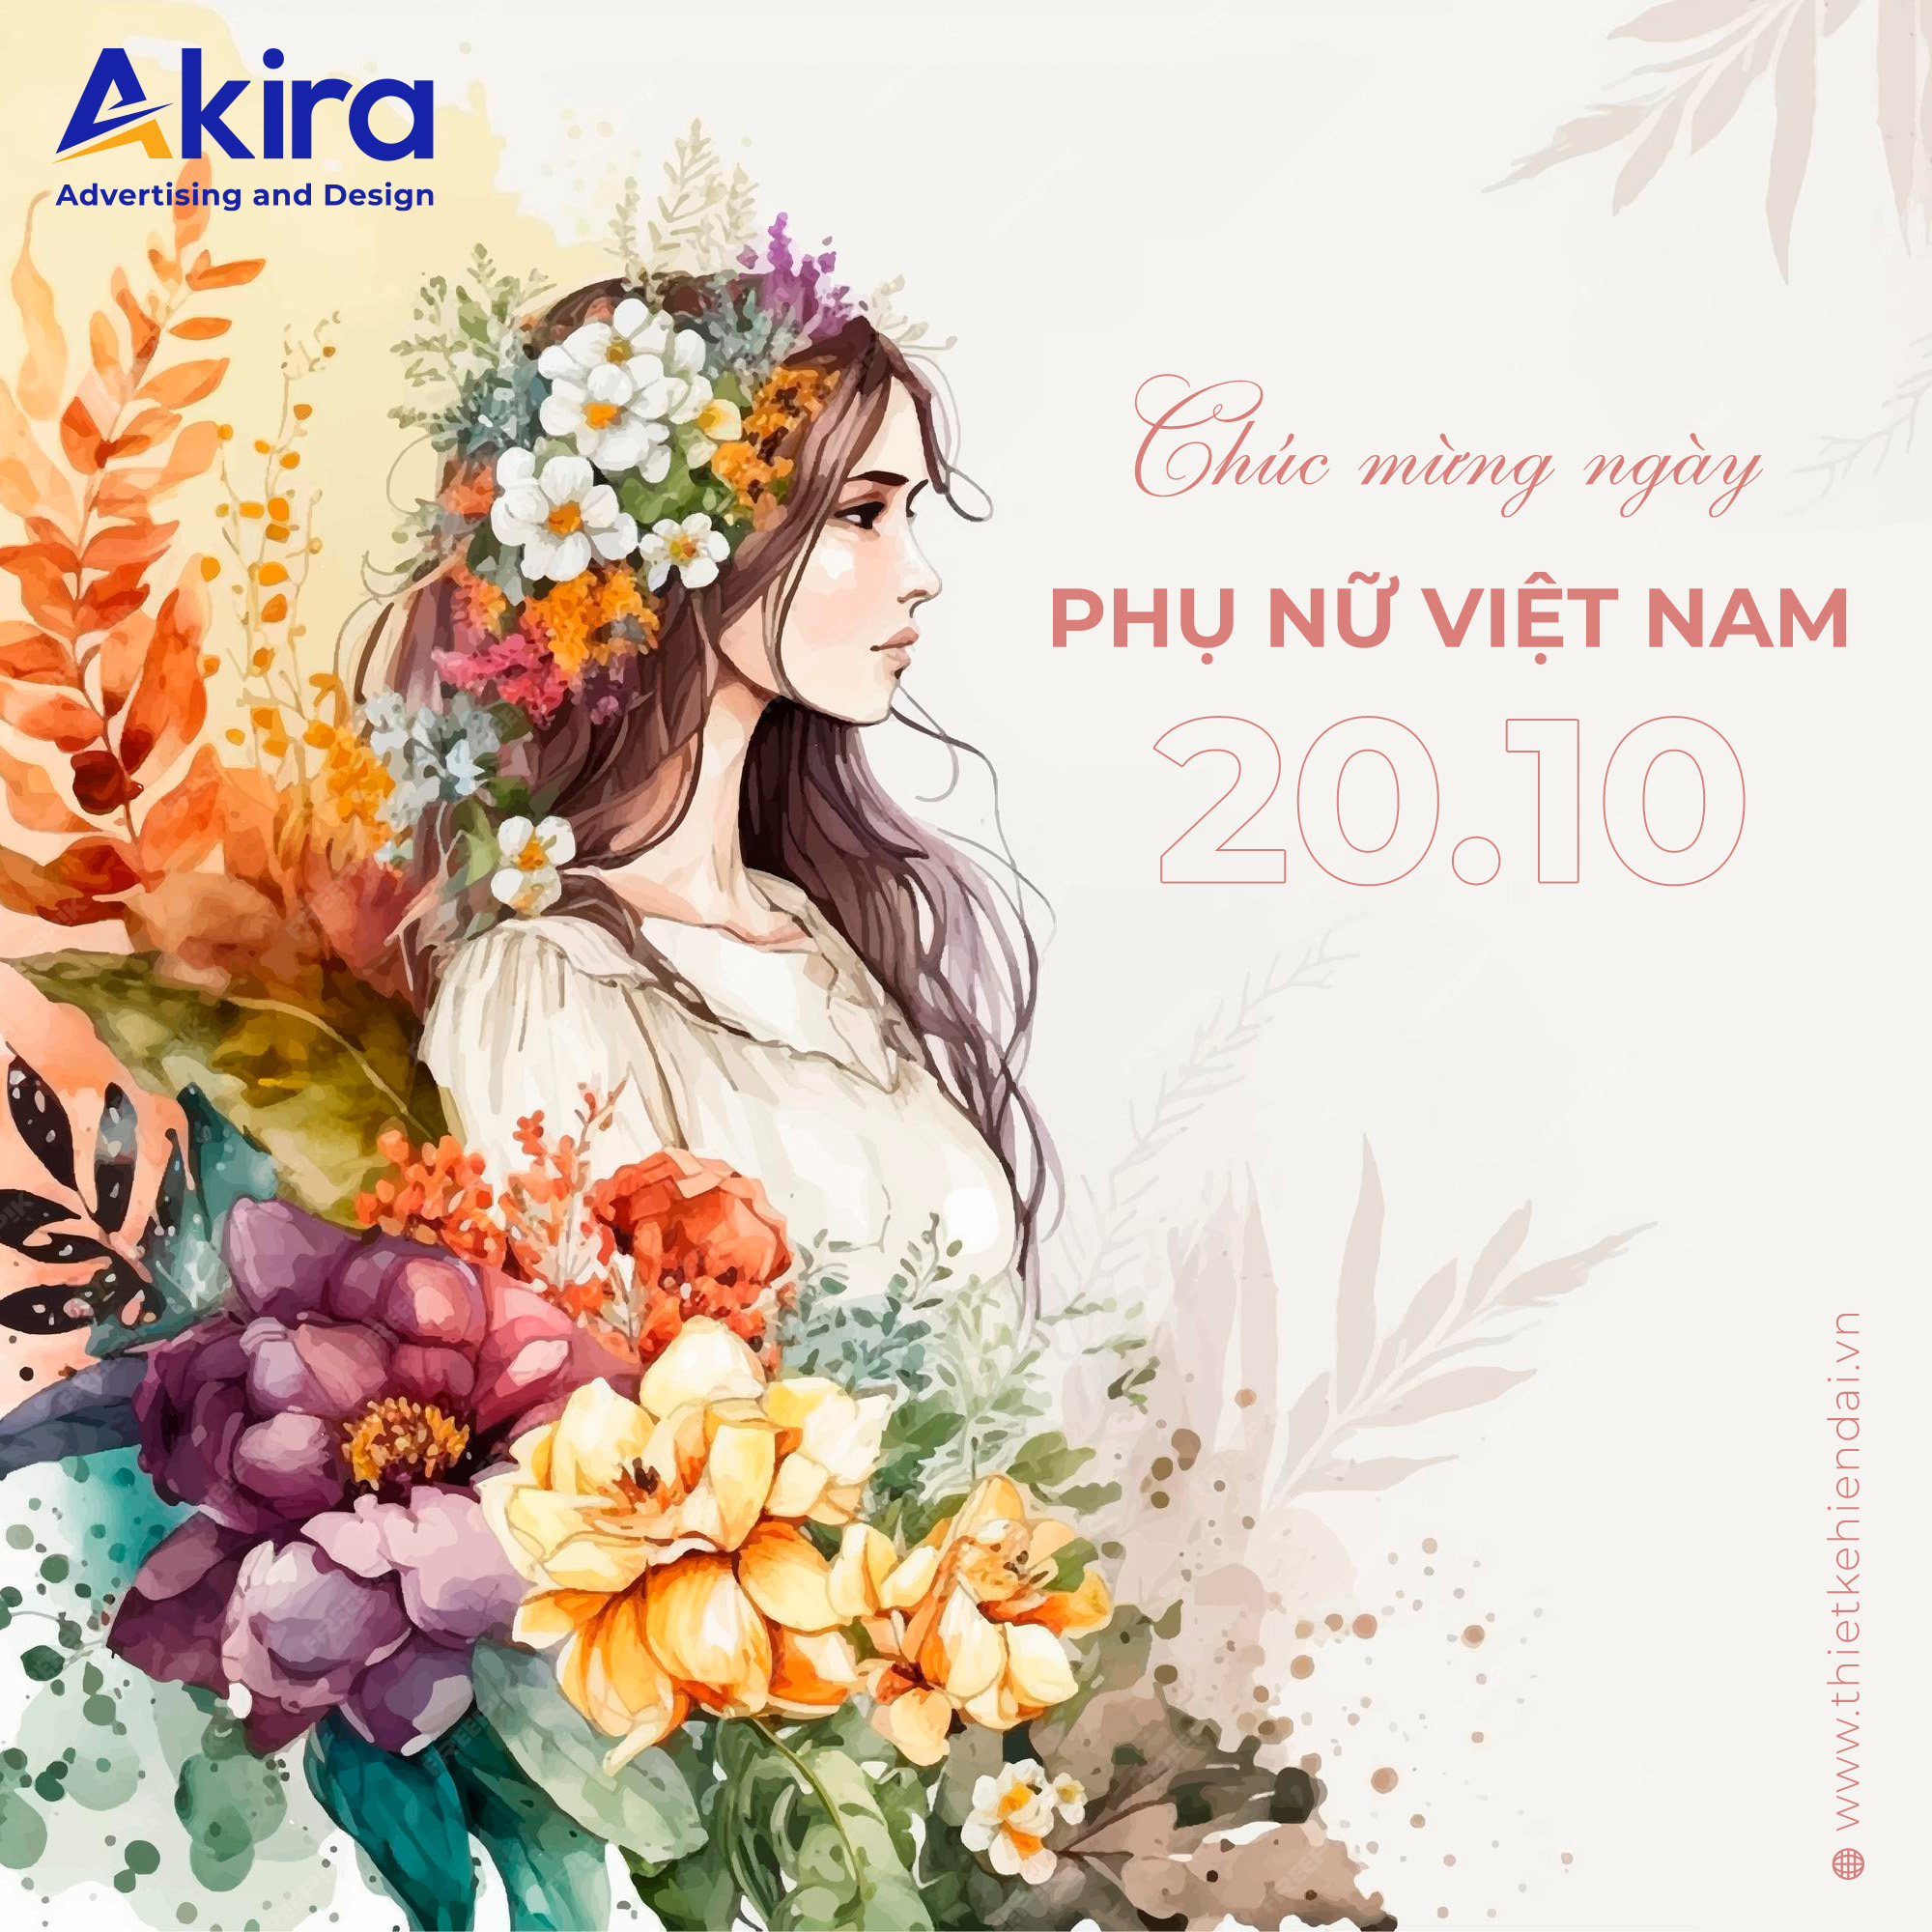 Chúc mừng ngày phụ nữ Việt Nam 20-10